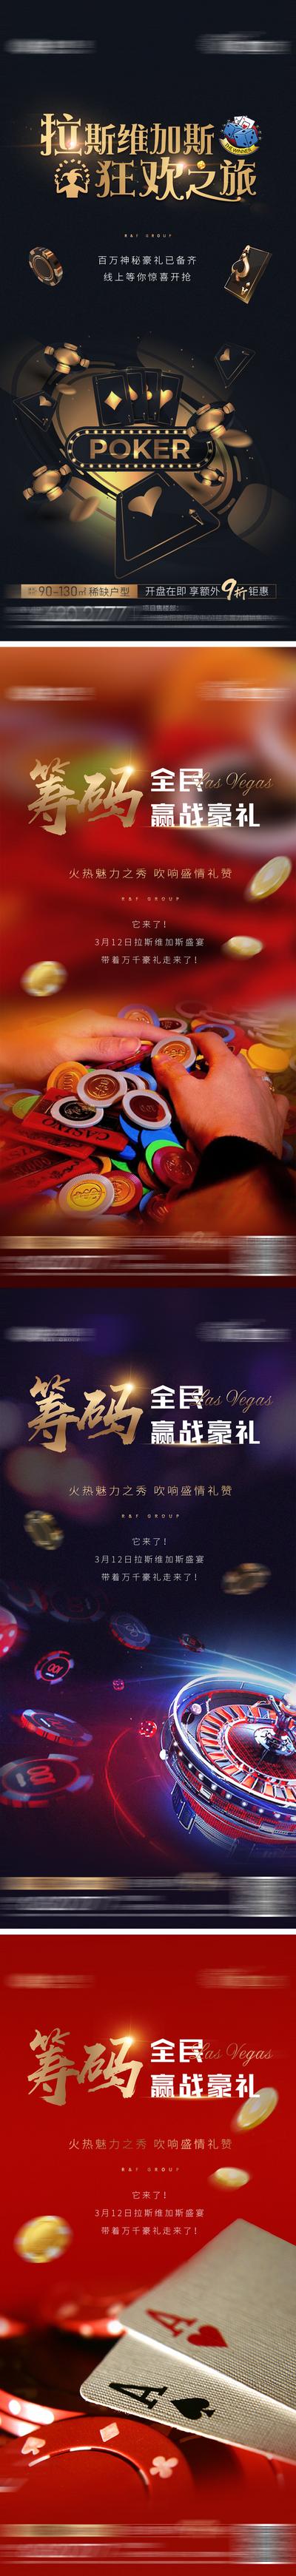 【南门网】海报 房地产 拉斯维加斯 扑克 筹码 骰子 轮盘 暖场活动 系列 赢好礼